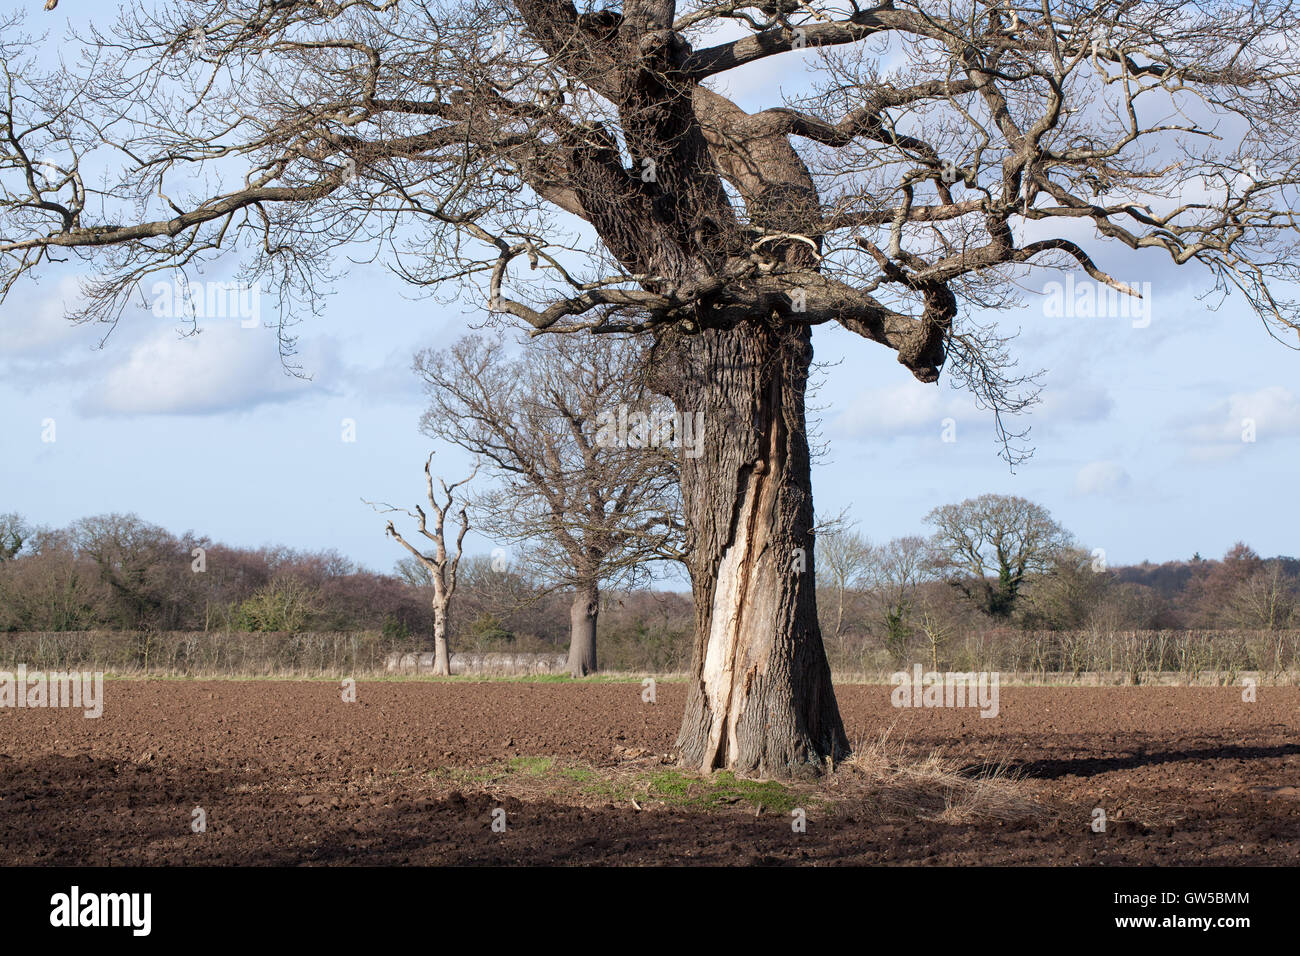 Arbre de chêne français (Quercus robur). Dommages au tronc suggérant une foudre dans la vie antérieure. Banque D'Images